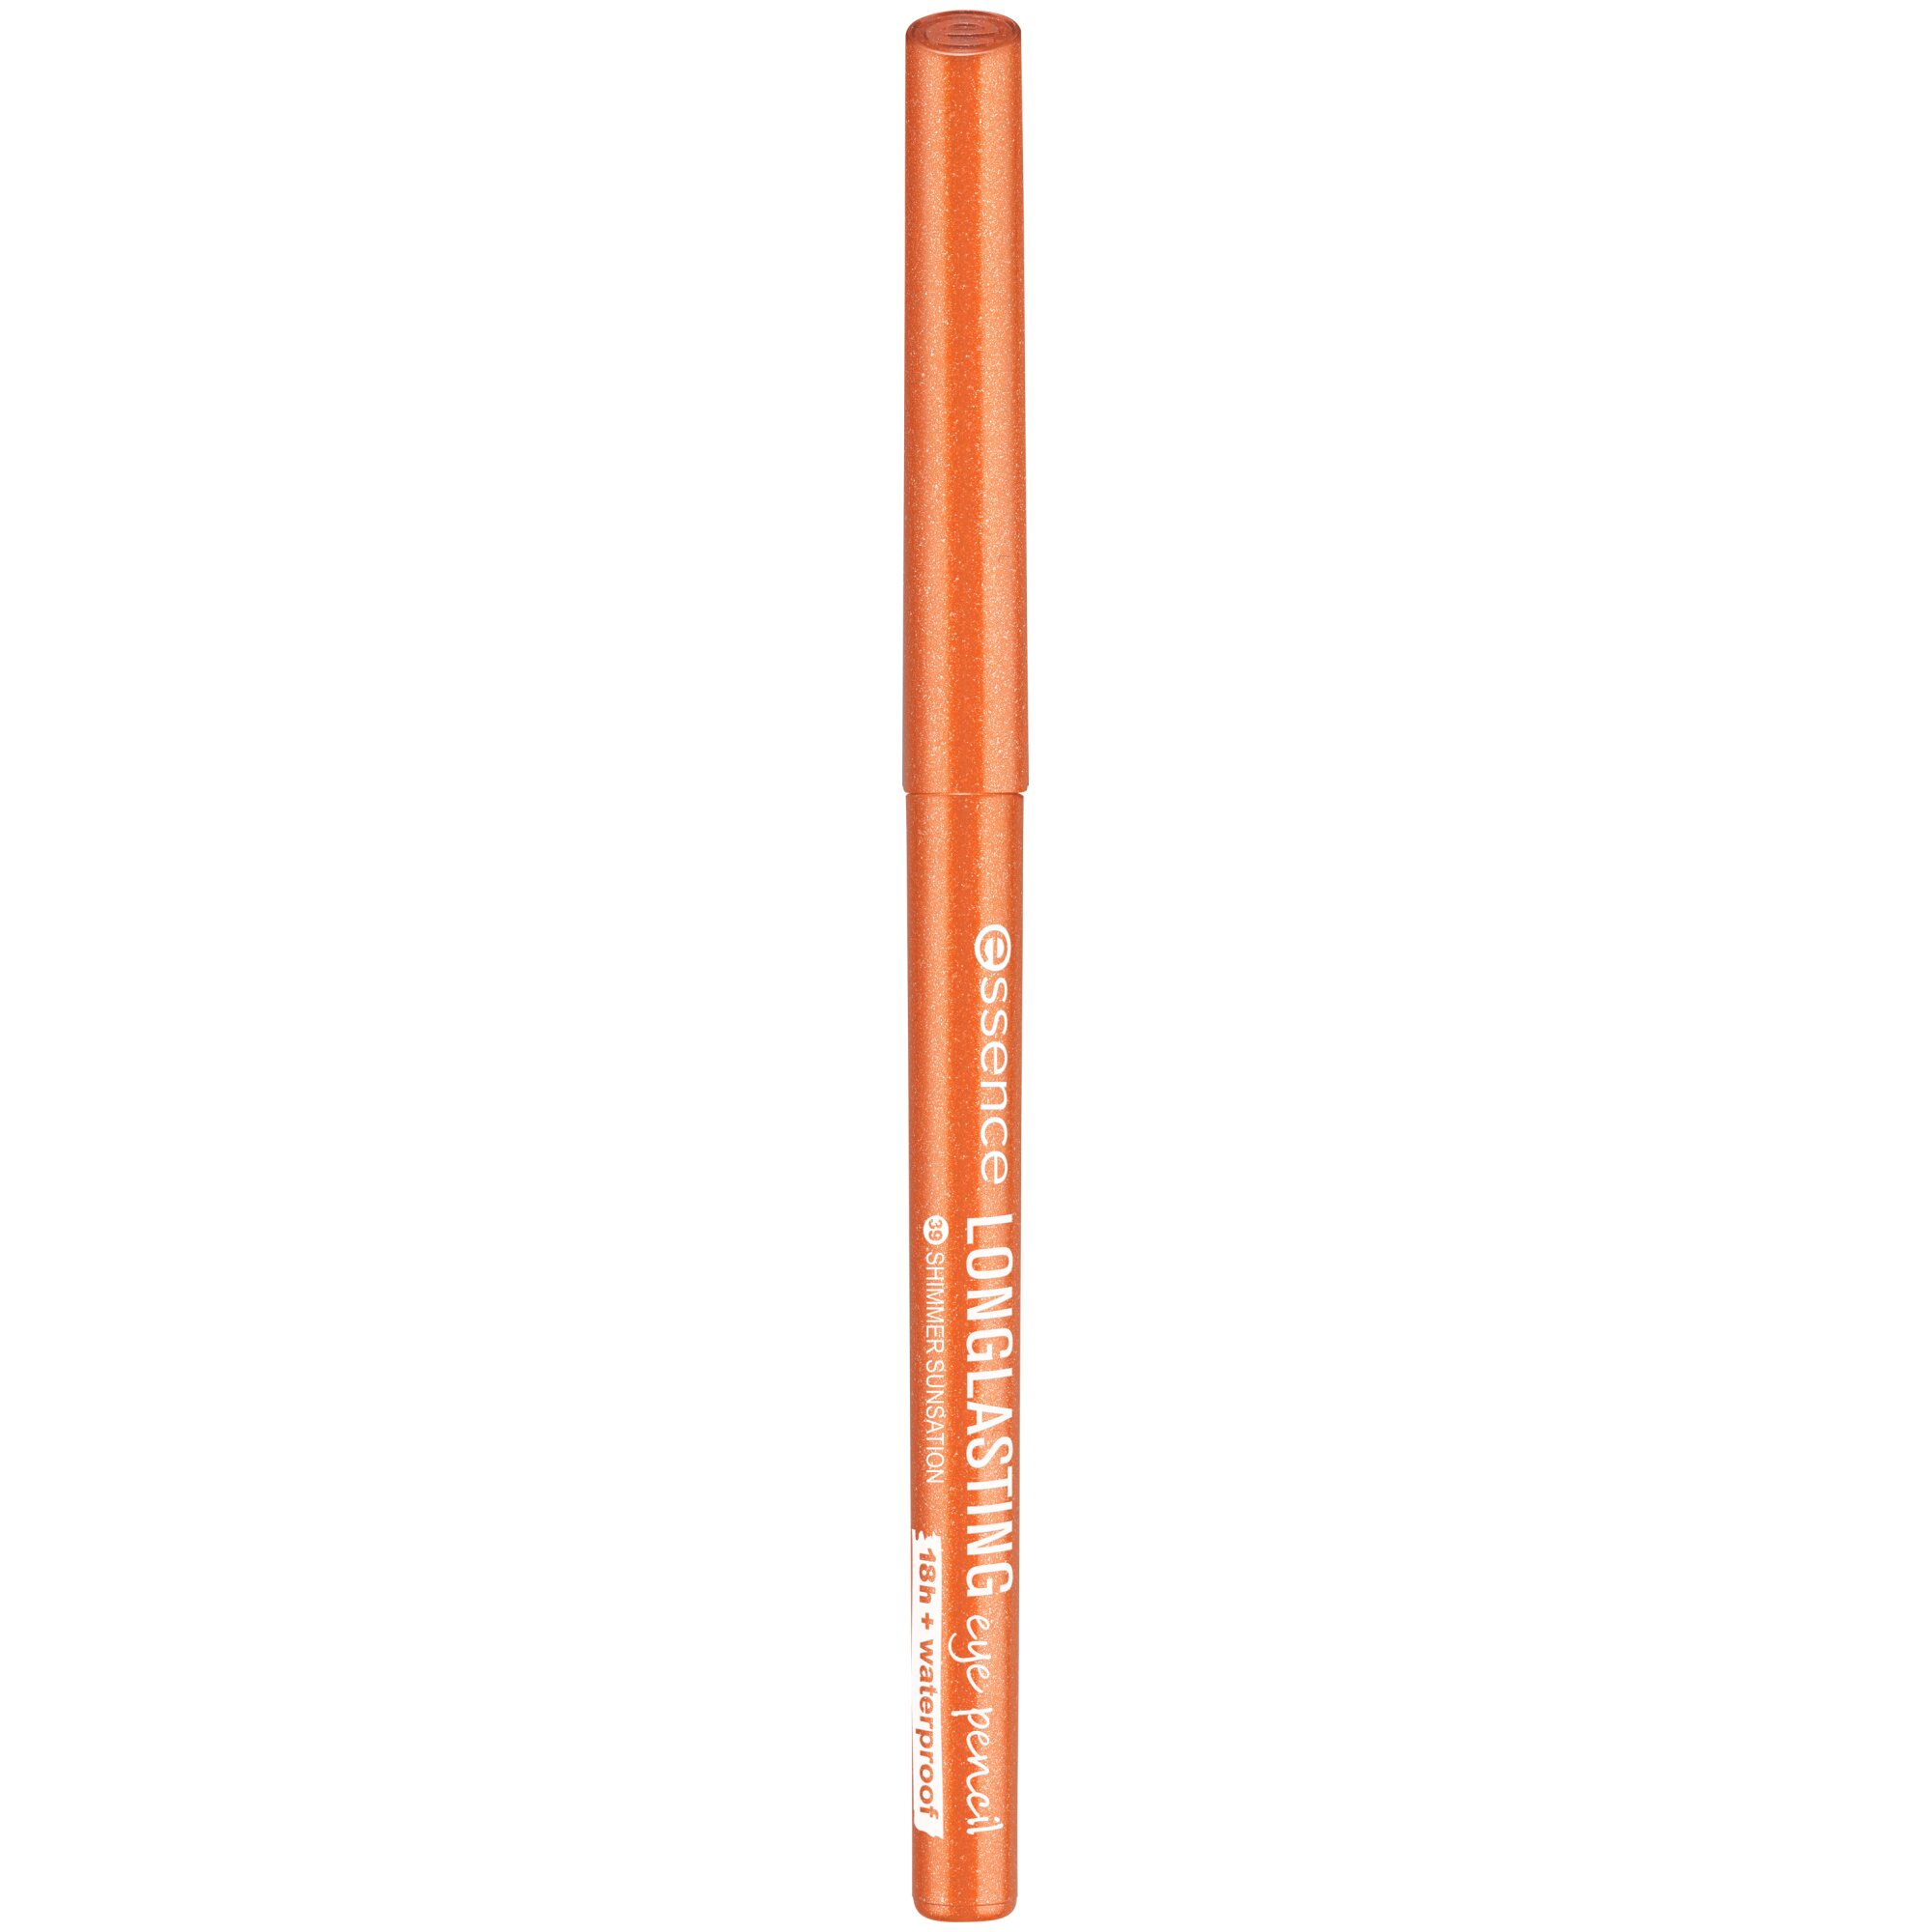 Creion pentru ochi Long-Lasting, 39 - Shimmer SunSation, 0.28, Essence